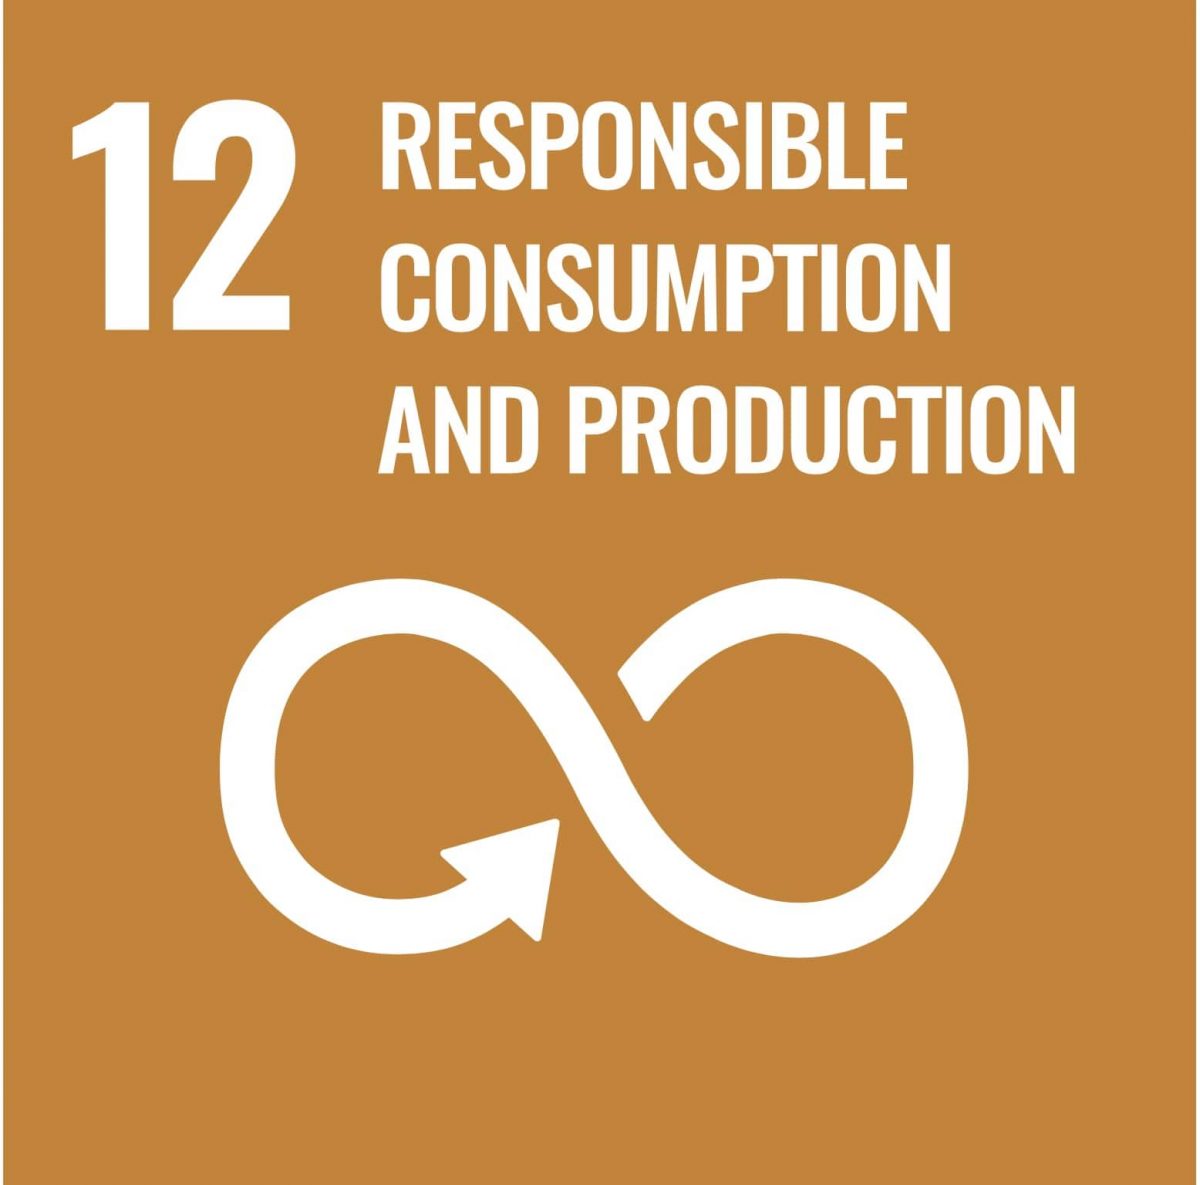 UN-Development-Goal-12-responsible-consumption-production-min-sustainable-goals